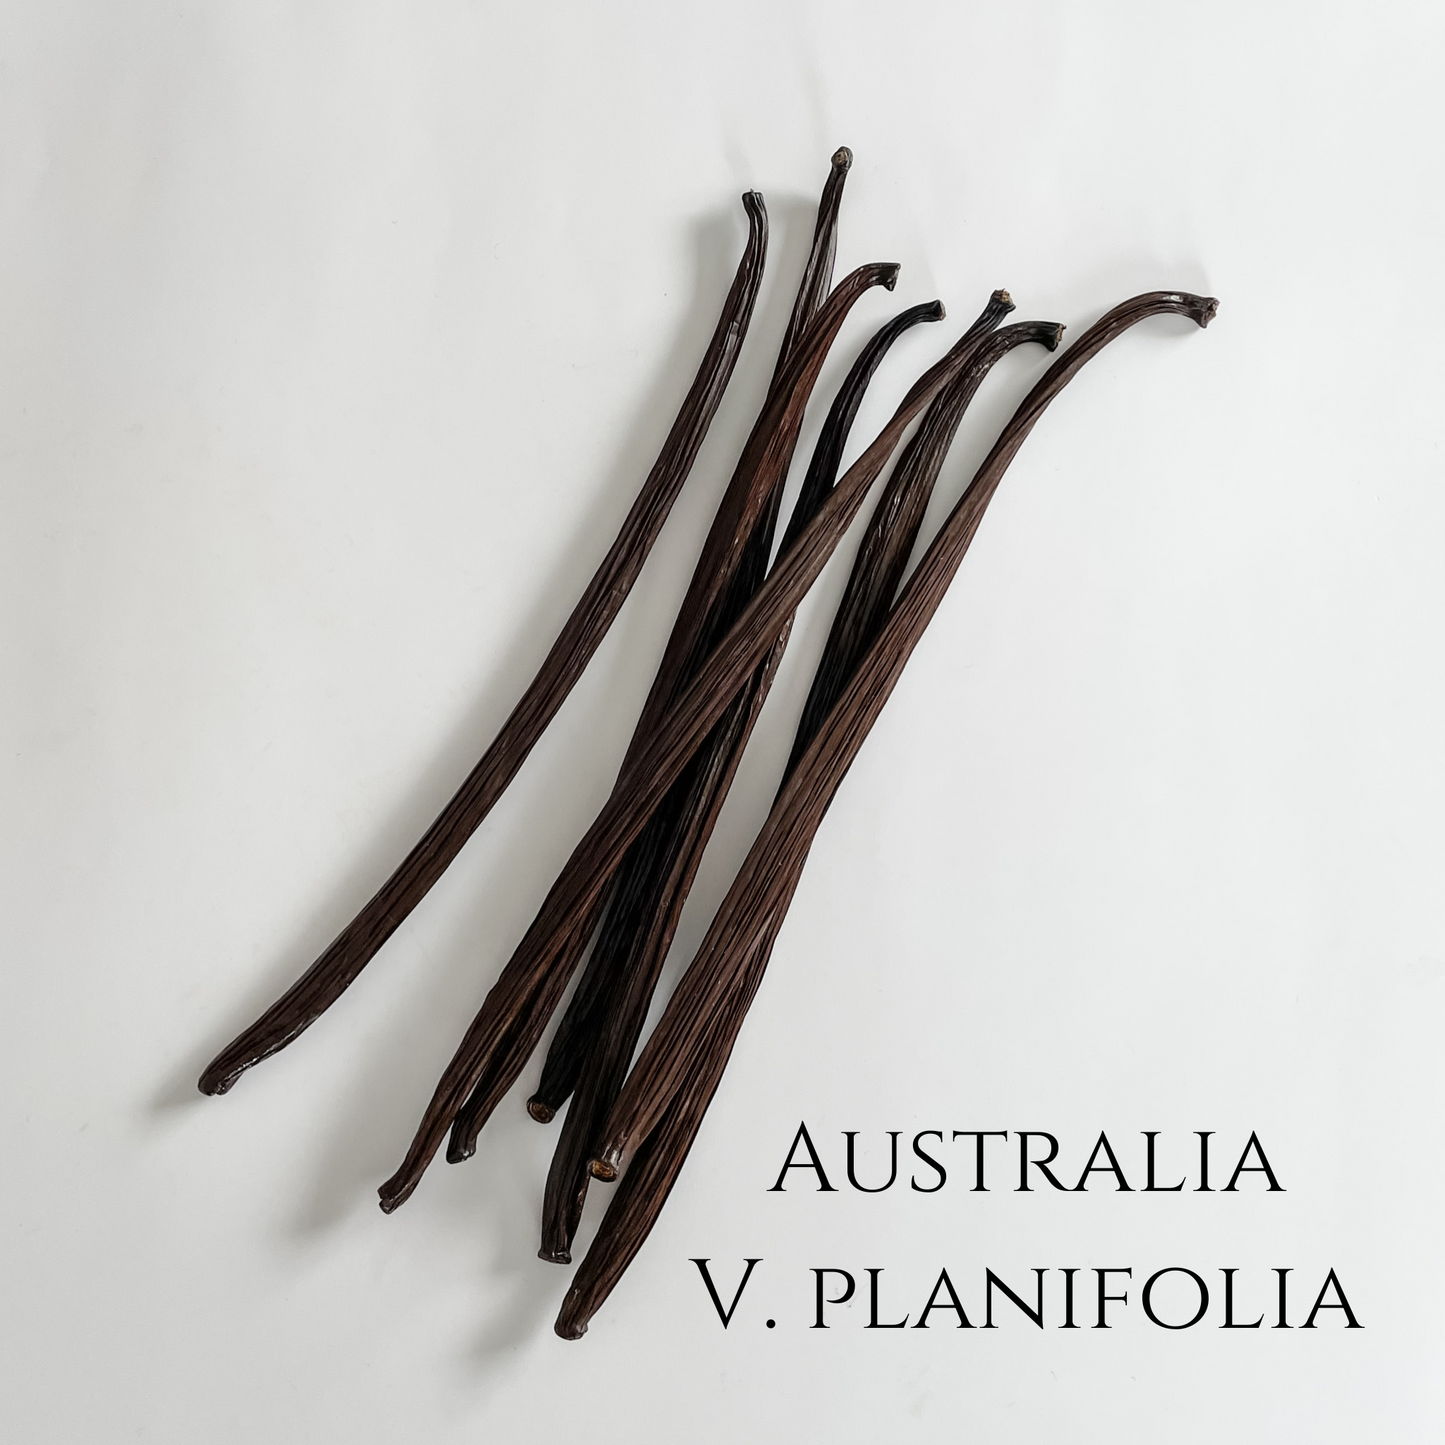 Australia V. planifolia Vanilla Beans